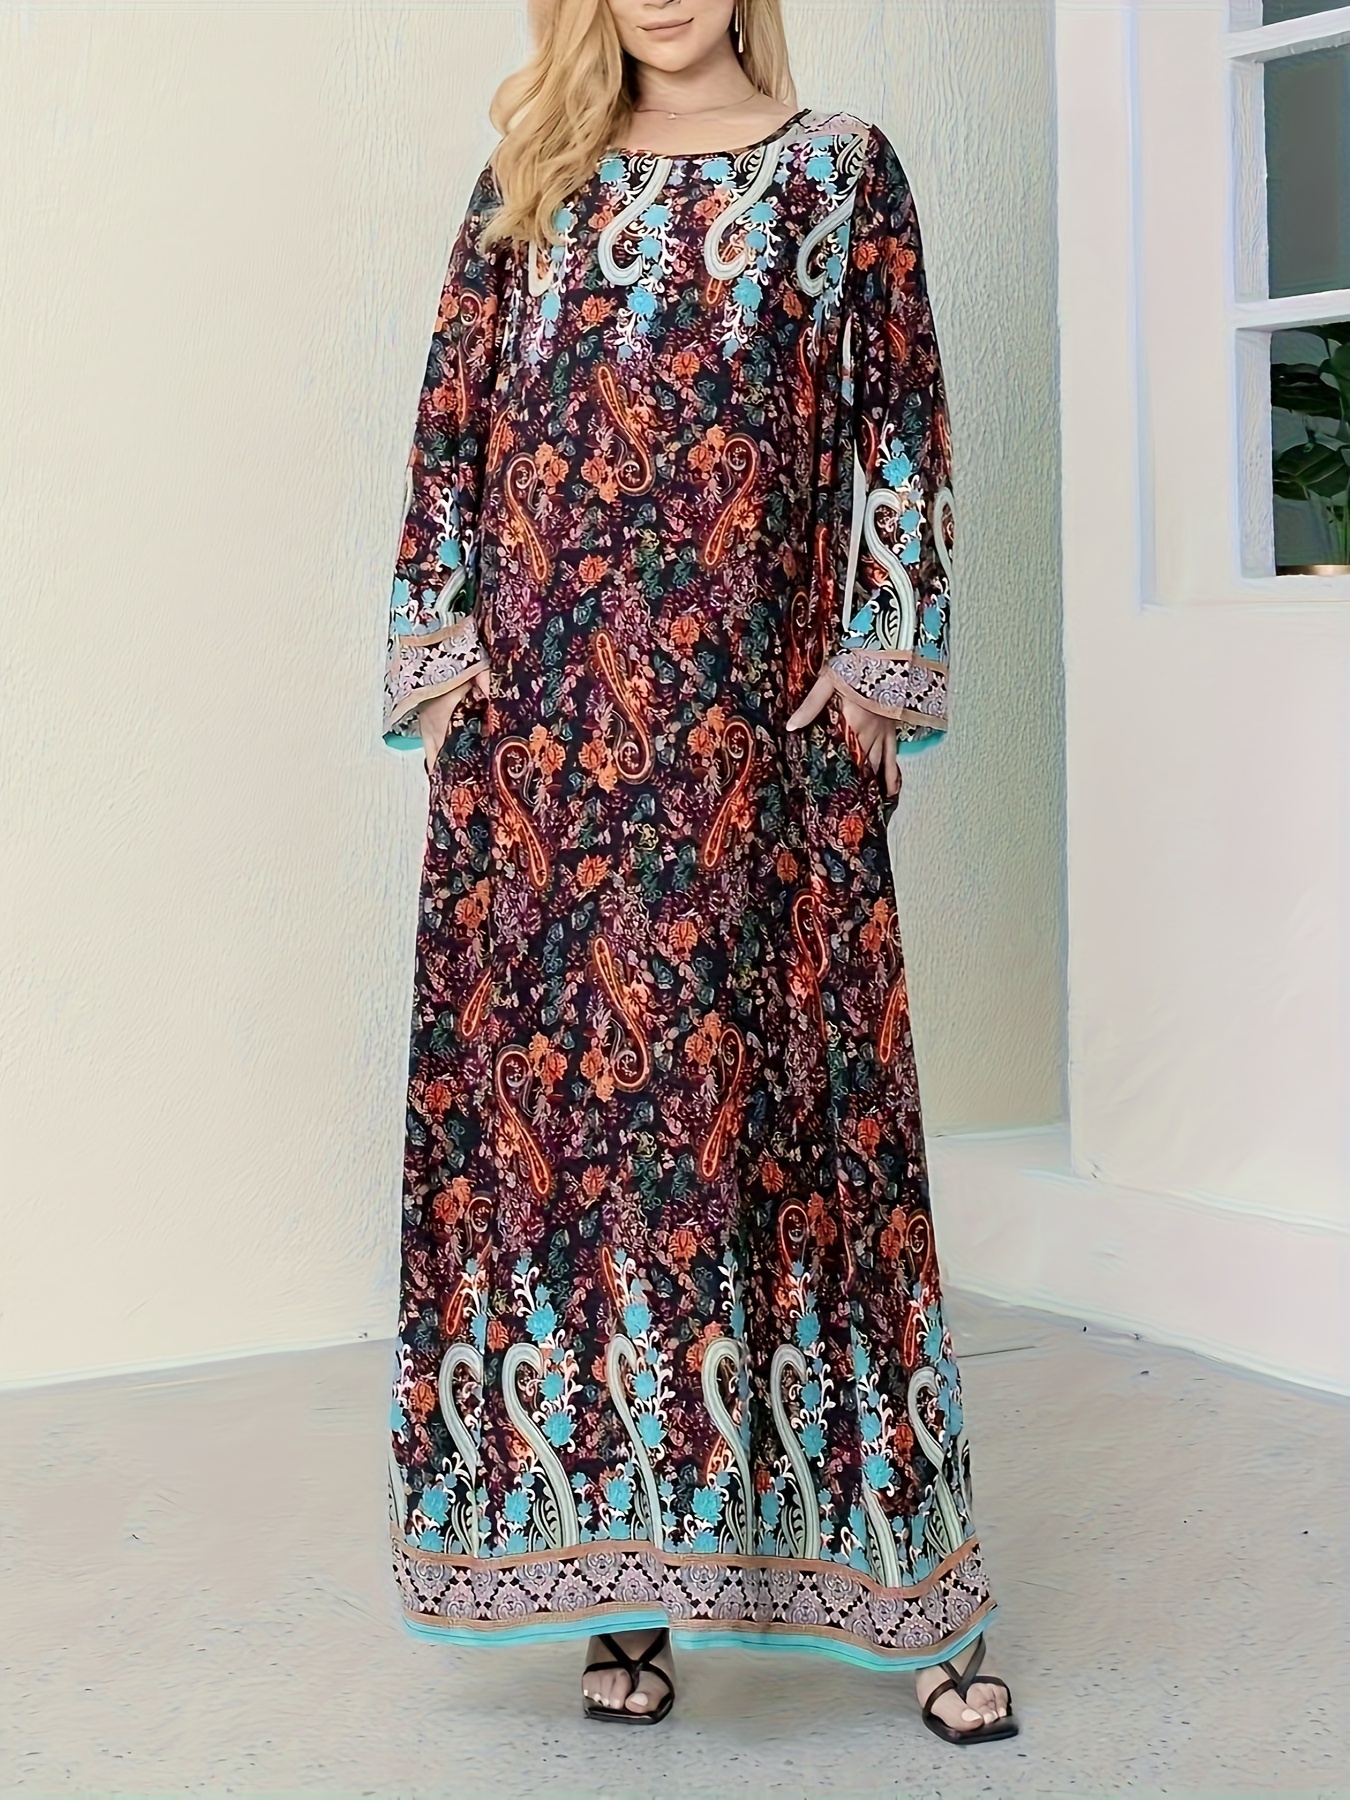 Φόρεμα Με Τσέπες Και Boho Λουλουδάτο Σχέδιο, Μακρυμάνικο Μάξι Φόρεμα Με Στρογγυλή Λαιμόκοψη Για Διακοπές, Γυναικεία Ρούχα